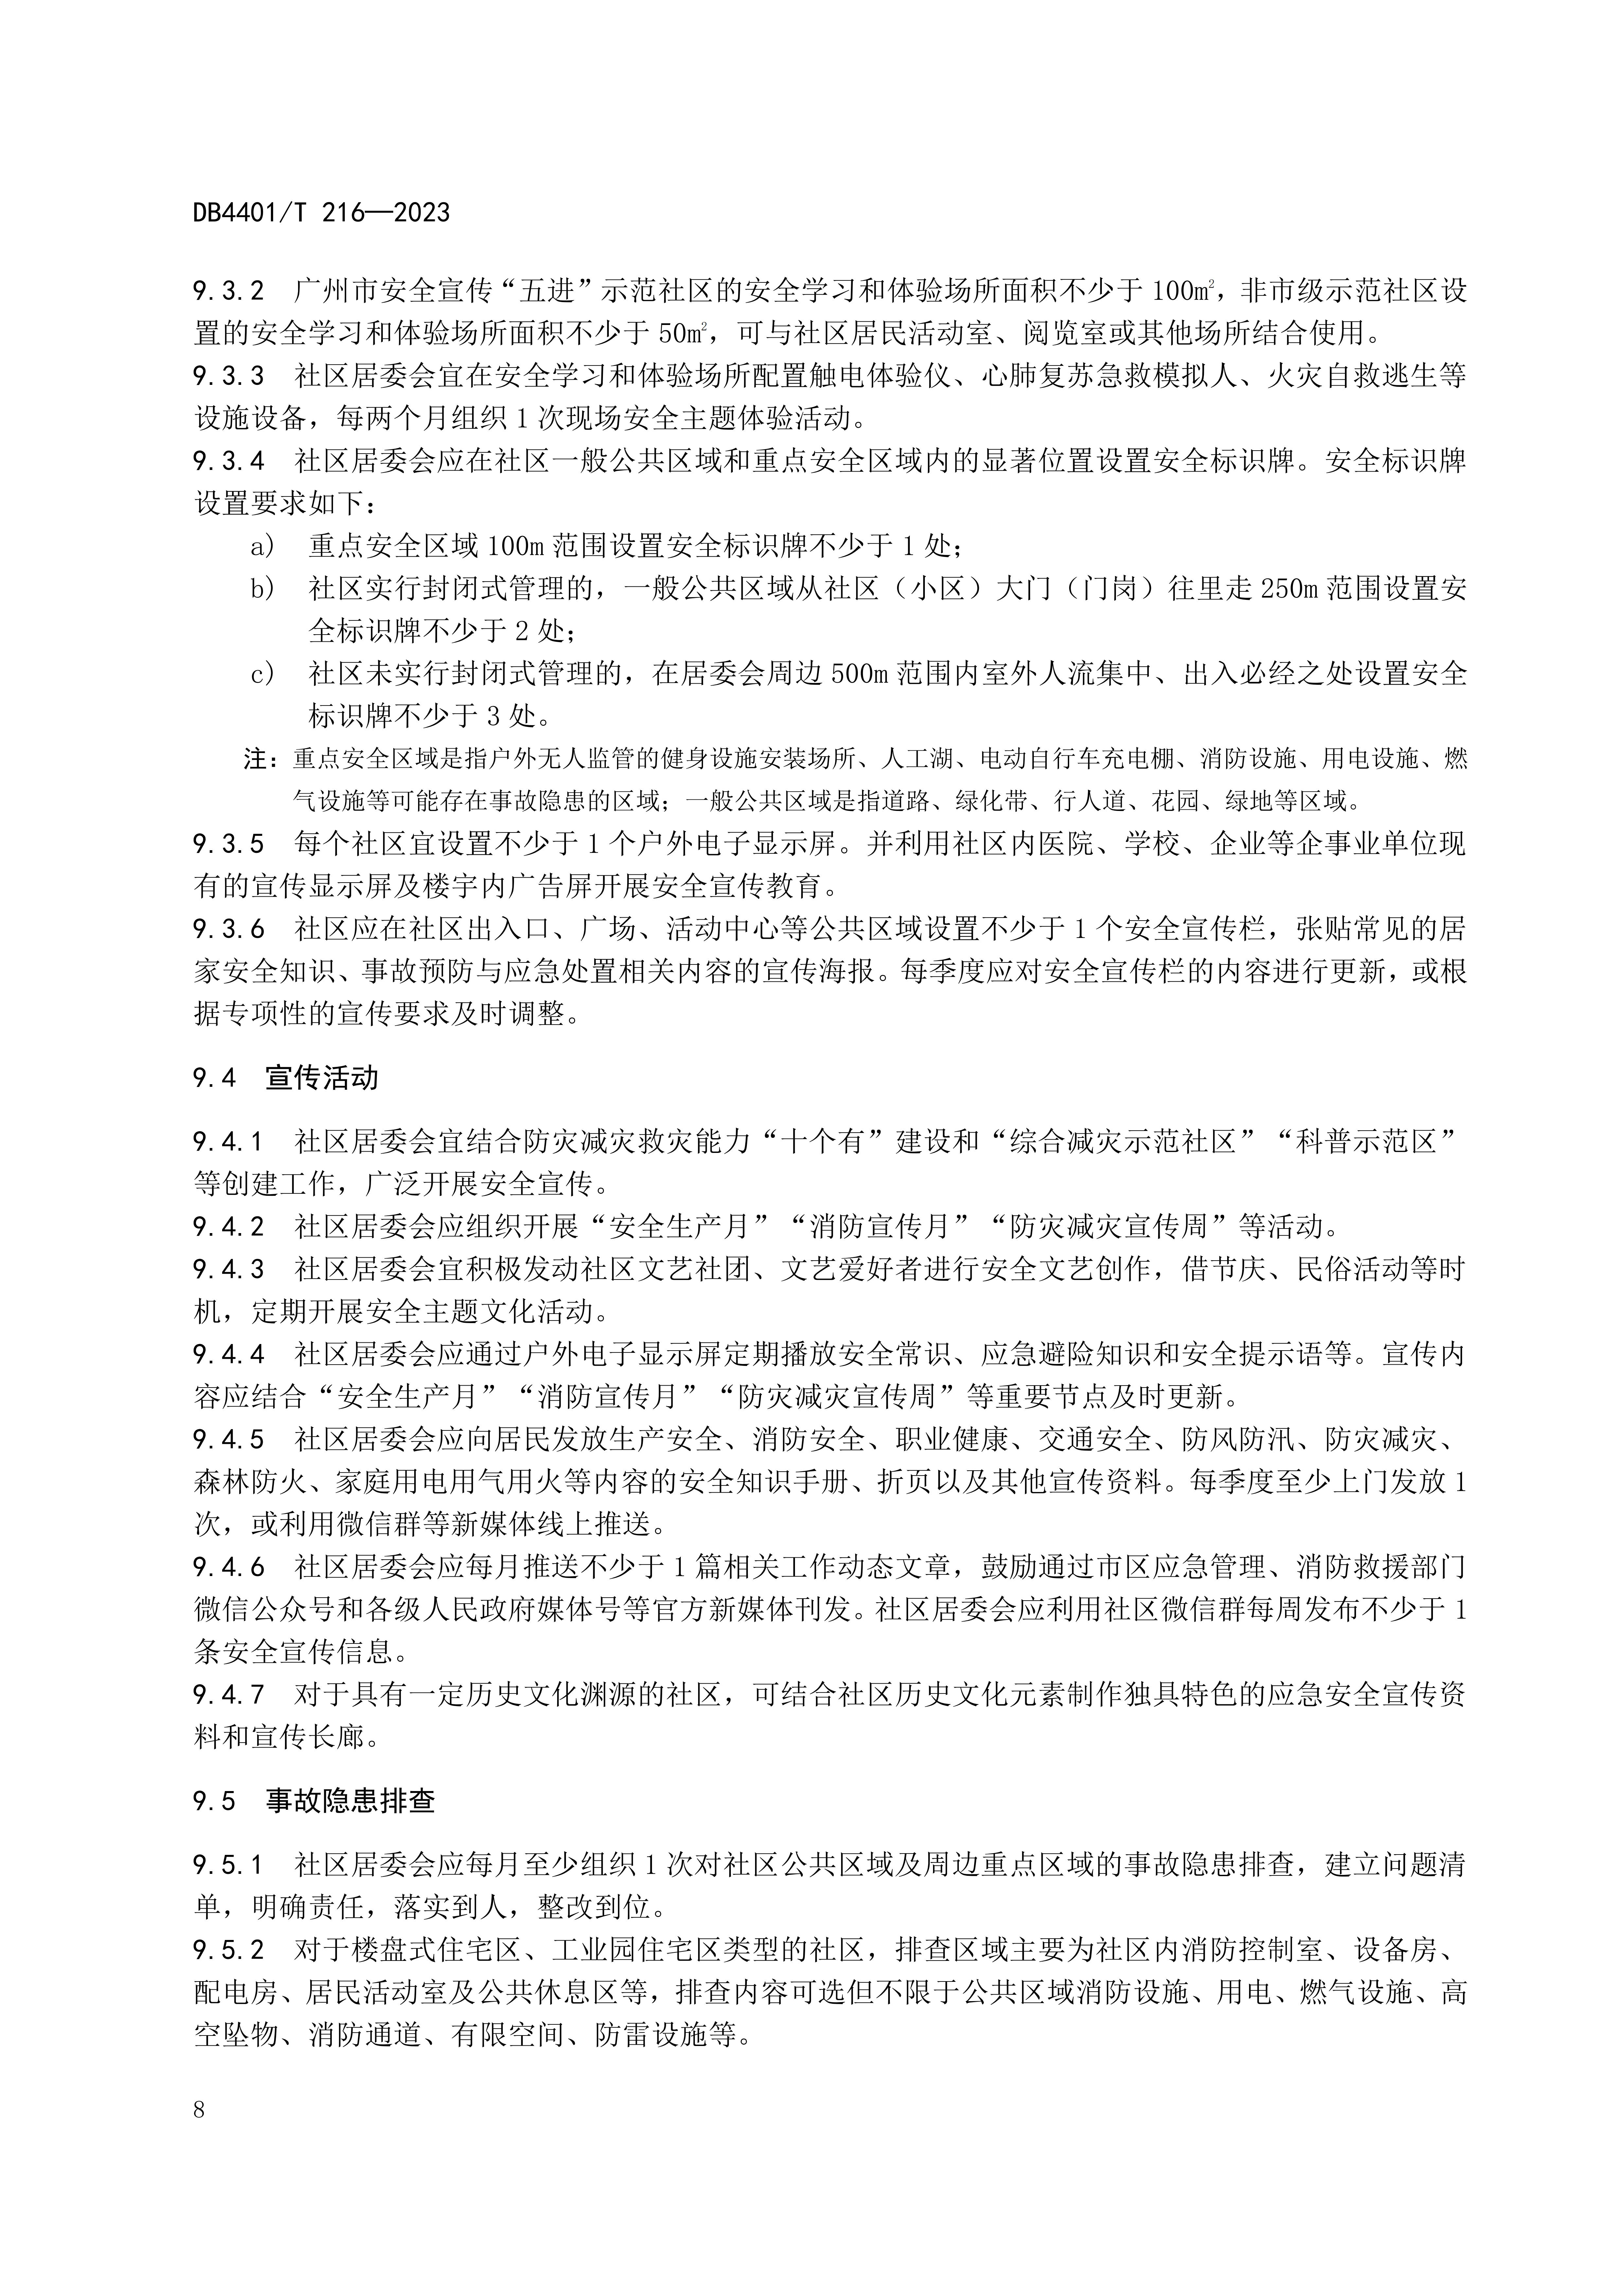 (终稿 发布稿)广州市地方标准《安全宣传“五进”工作规范》20230625_13.jpg